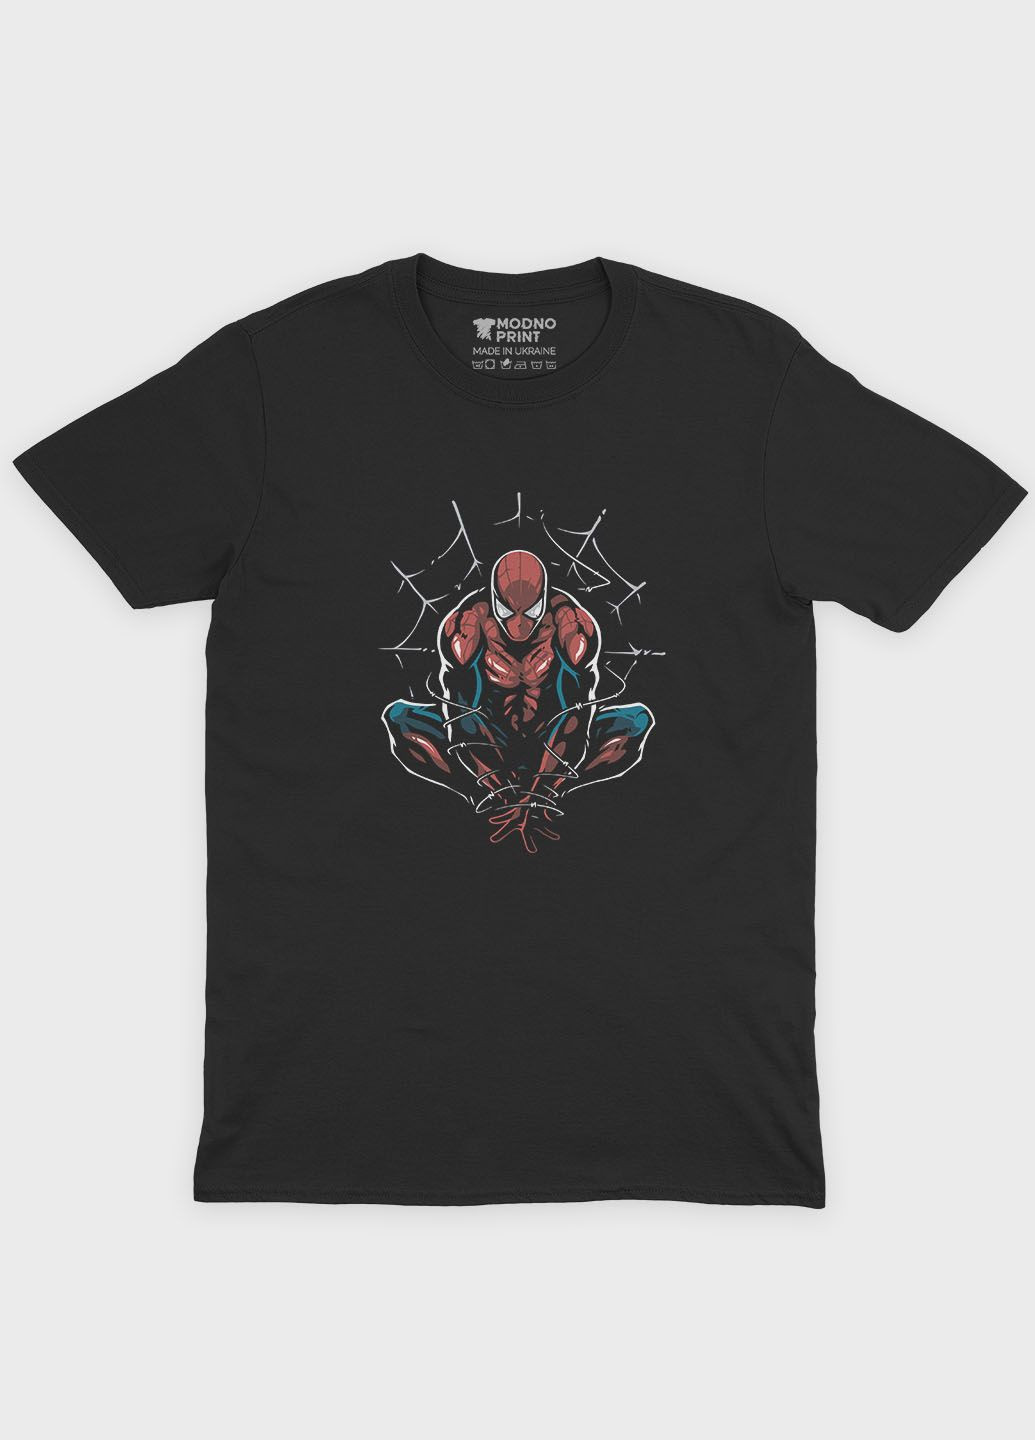 Чорна чоловіча футболка з принтом супергероя - людина-павук (ts001-1-bl-006-014-086) Modno